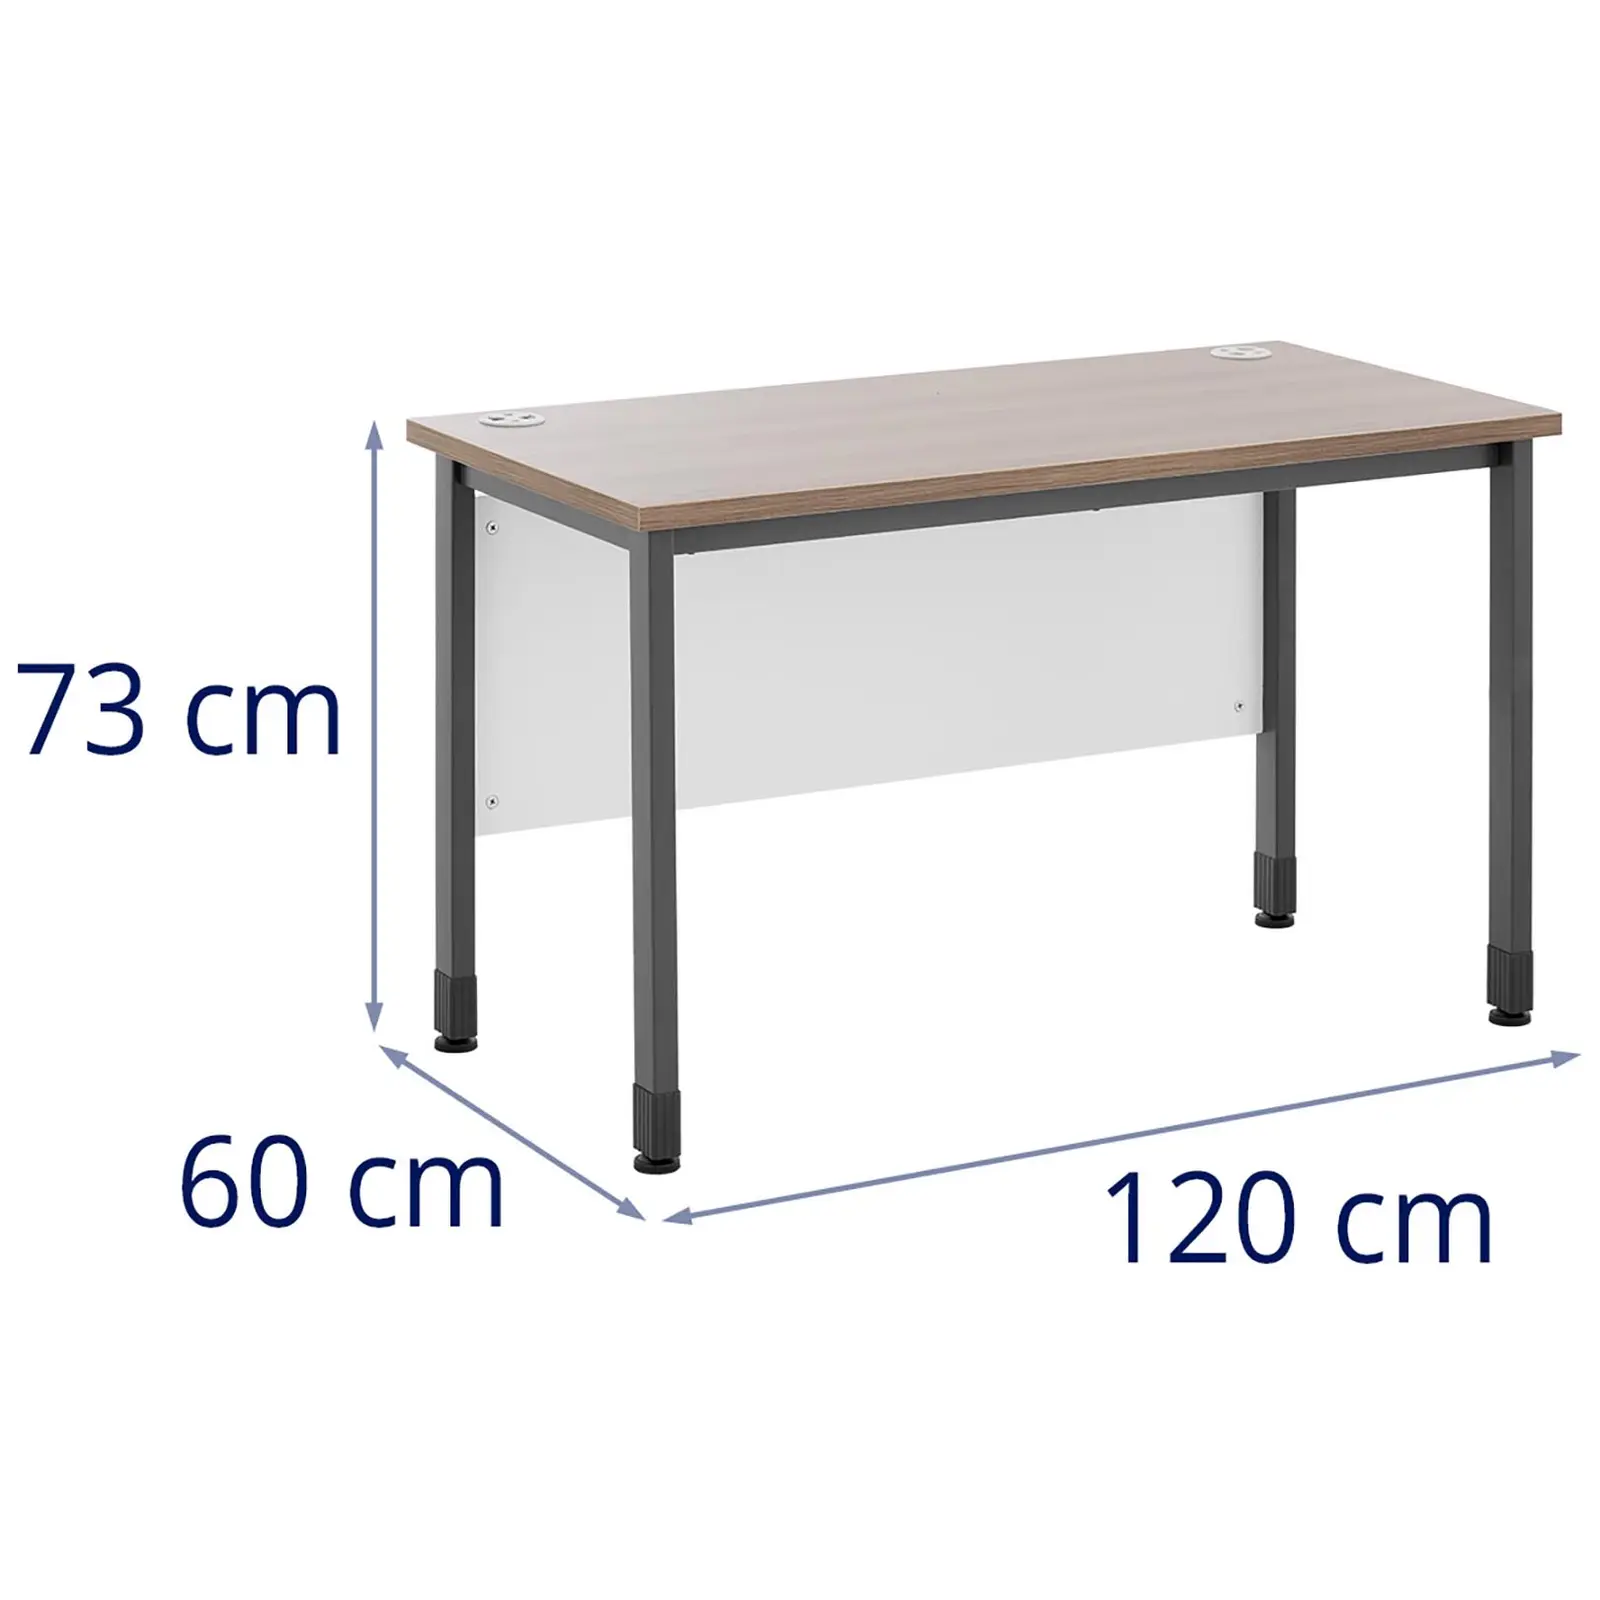 Toimistopöytä - 120 x 60 cm - ruskea / harmaa